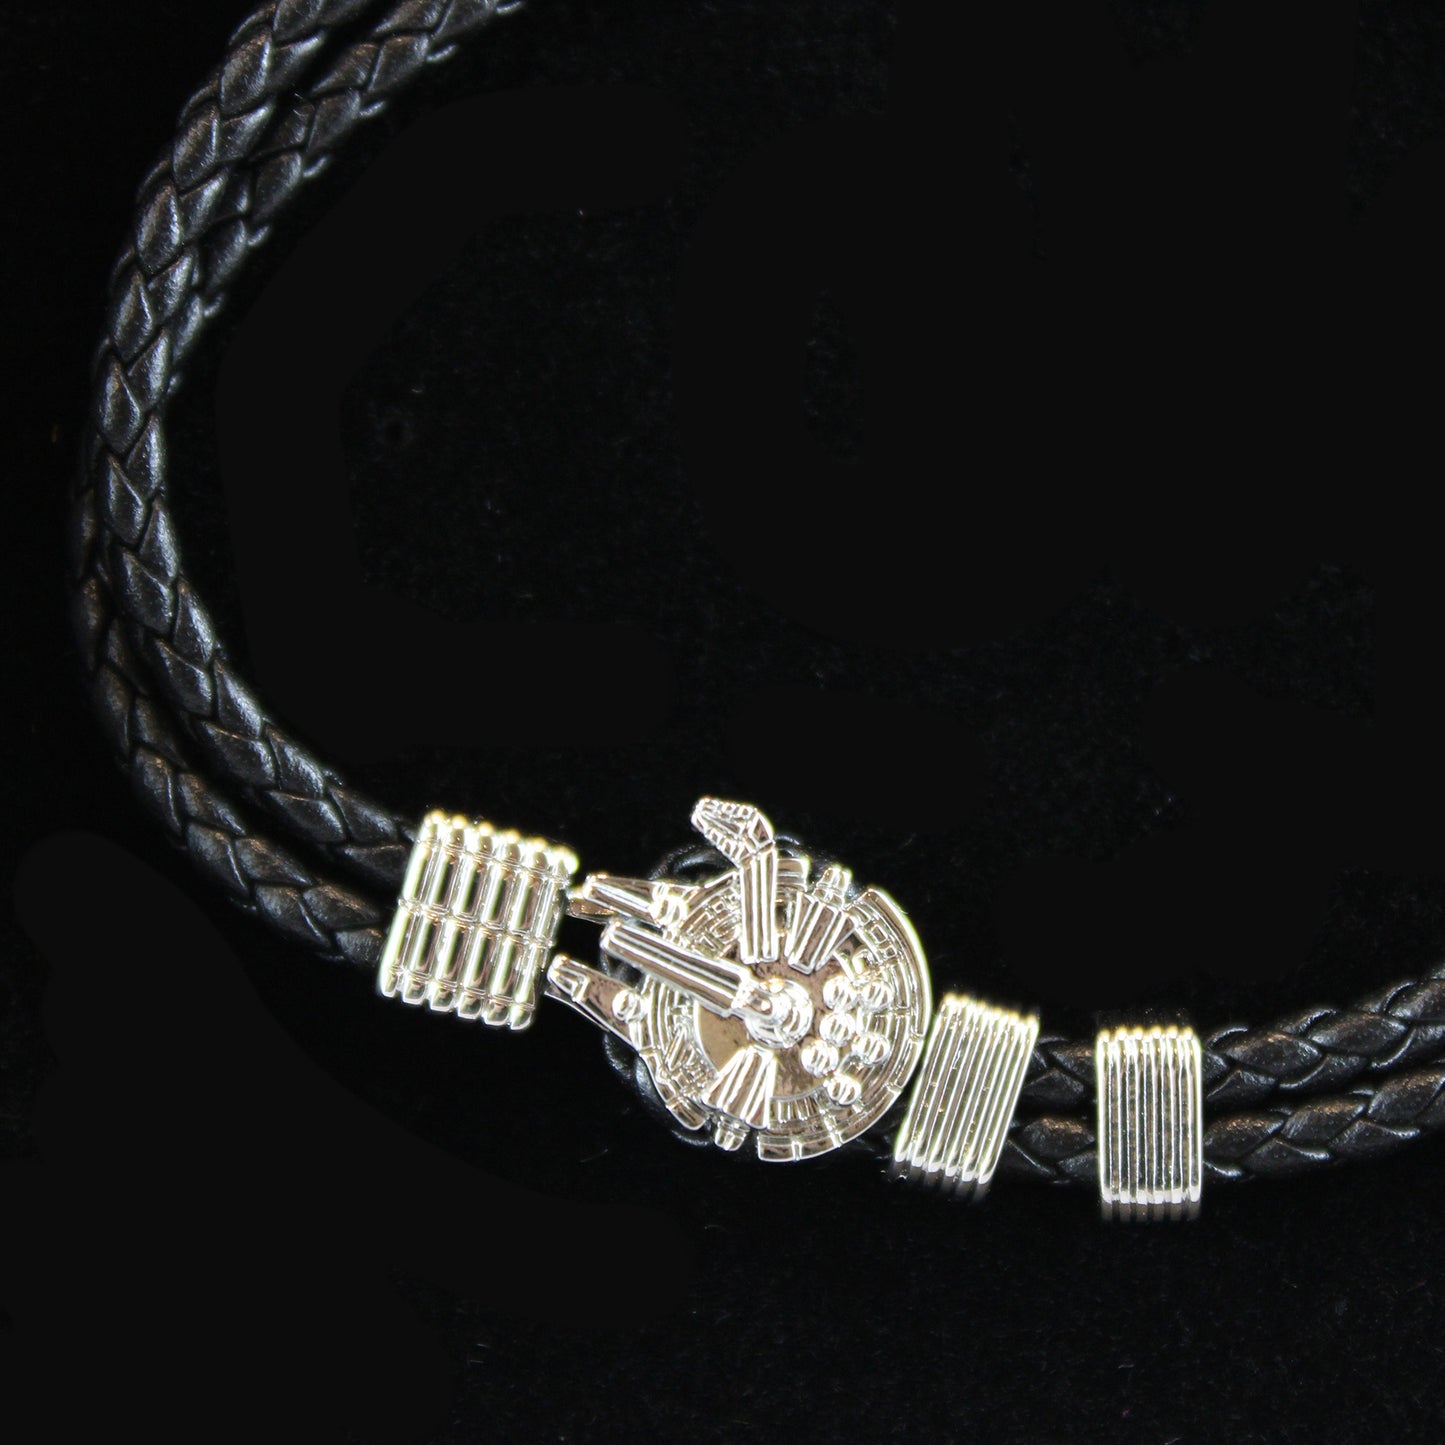 Millennium Falcon Leather Bracelet